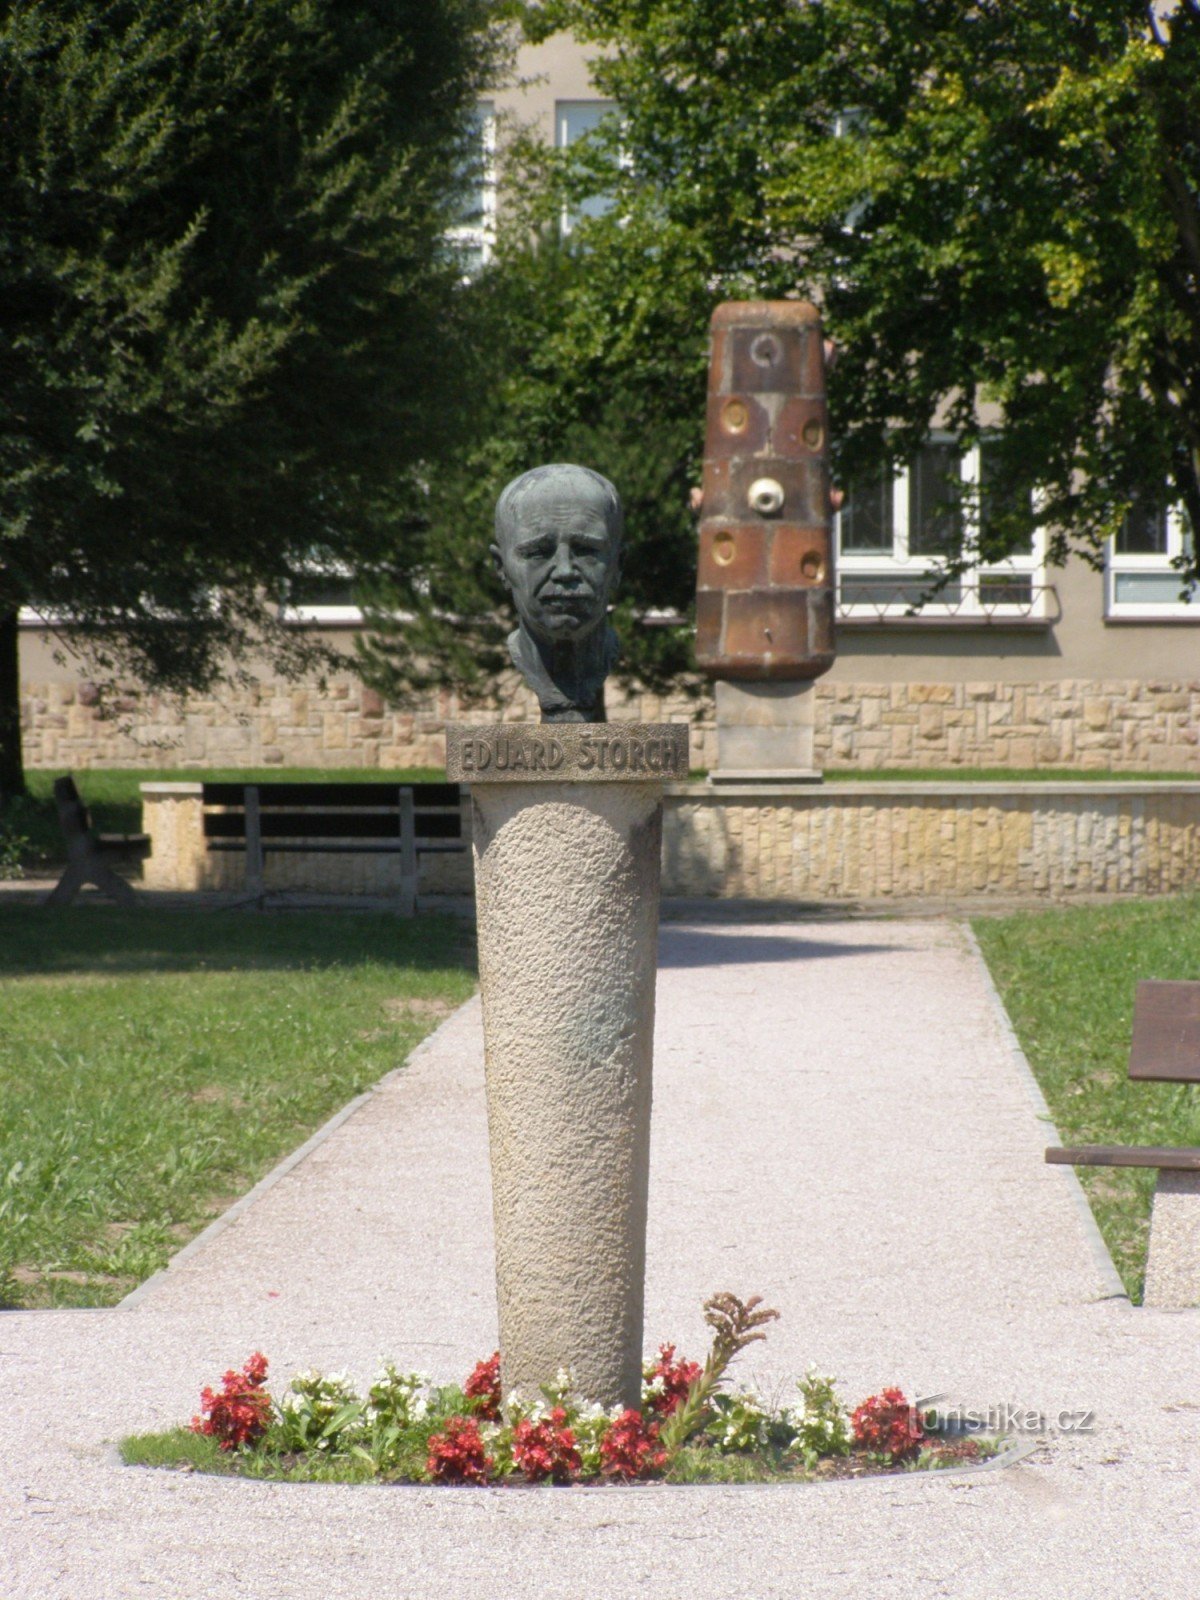 Ostroměř - bustul lui Eduard Štorch